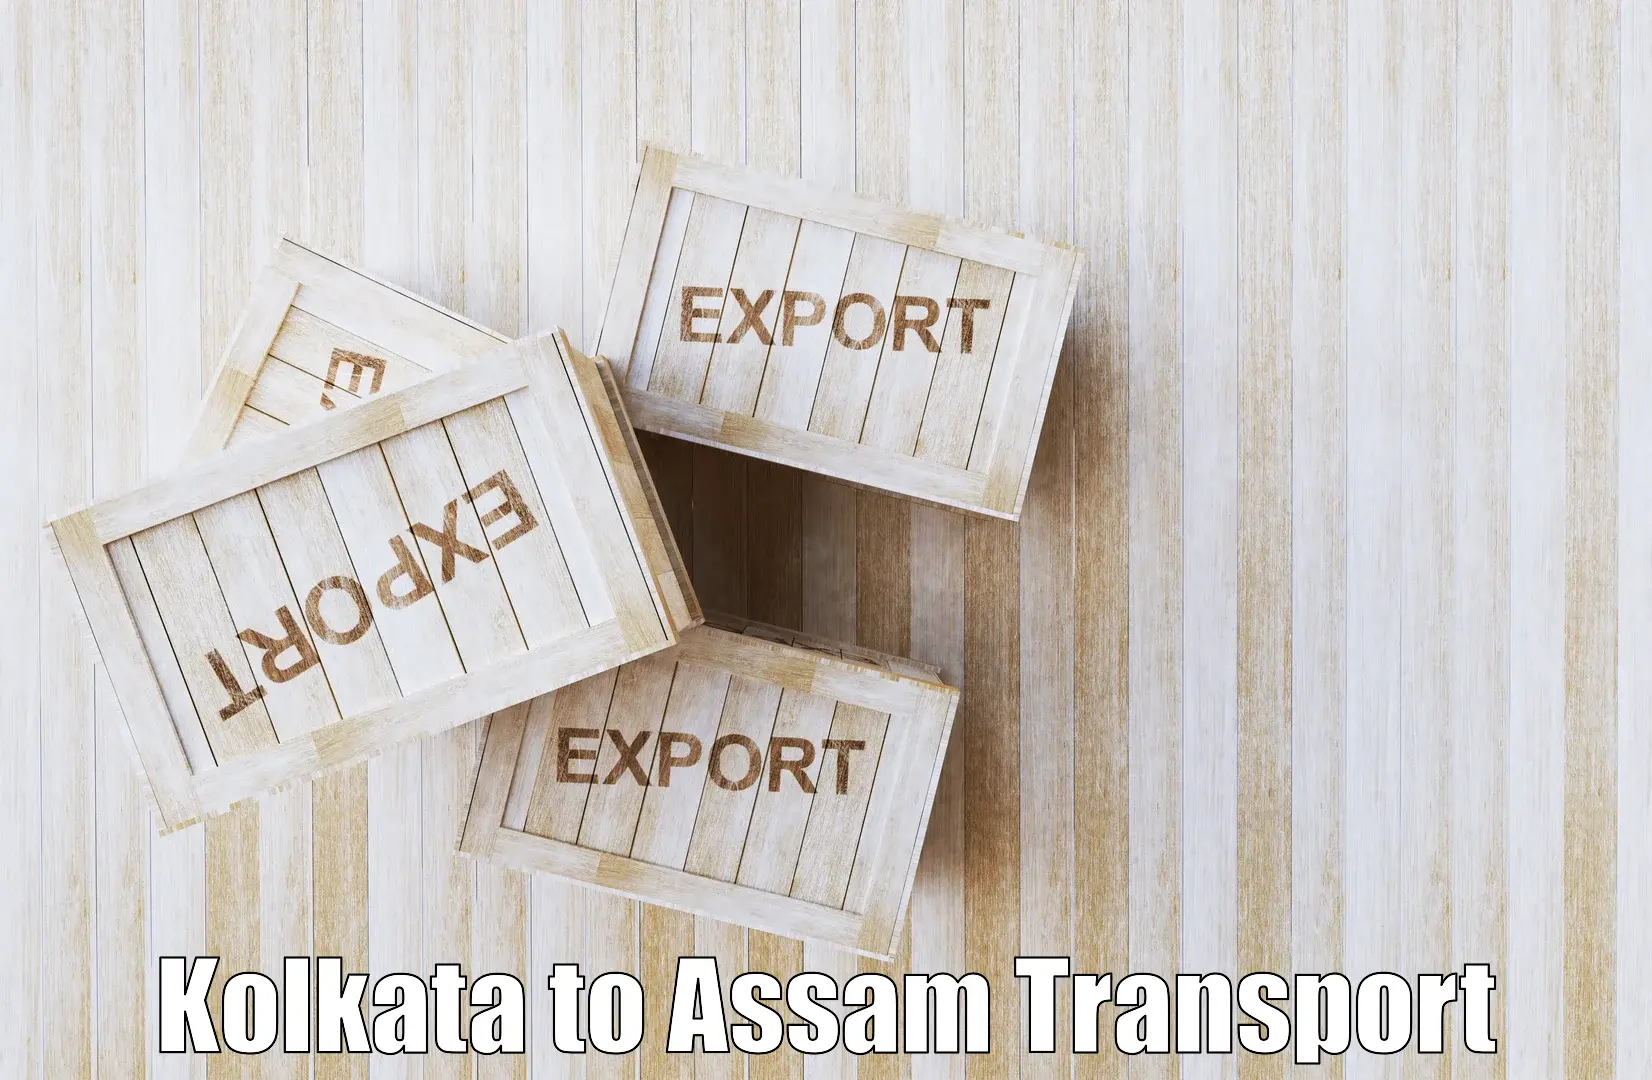 Interstate goods transport in Kolkata to Kampur